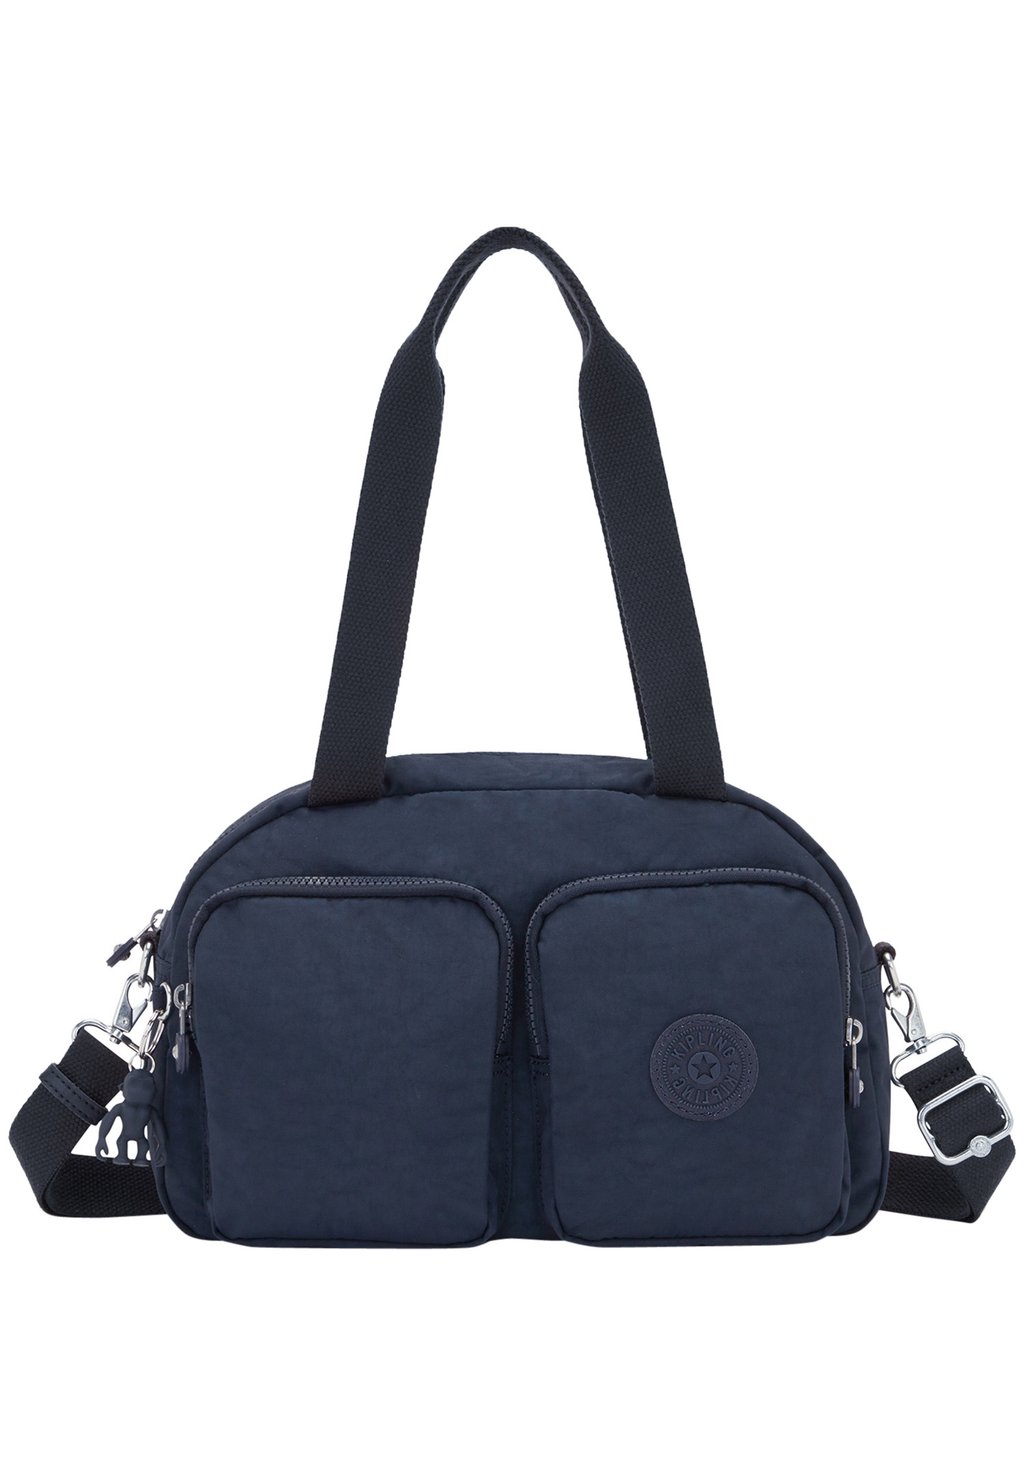 Сумка через плечо Kipling Cool Defea, темно-синий сумка ki601748i cool defea medium shoulder bag 48i metallic glow